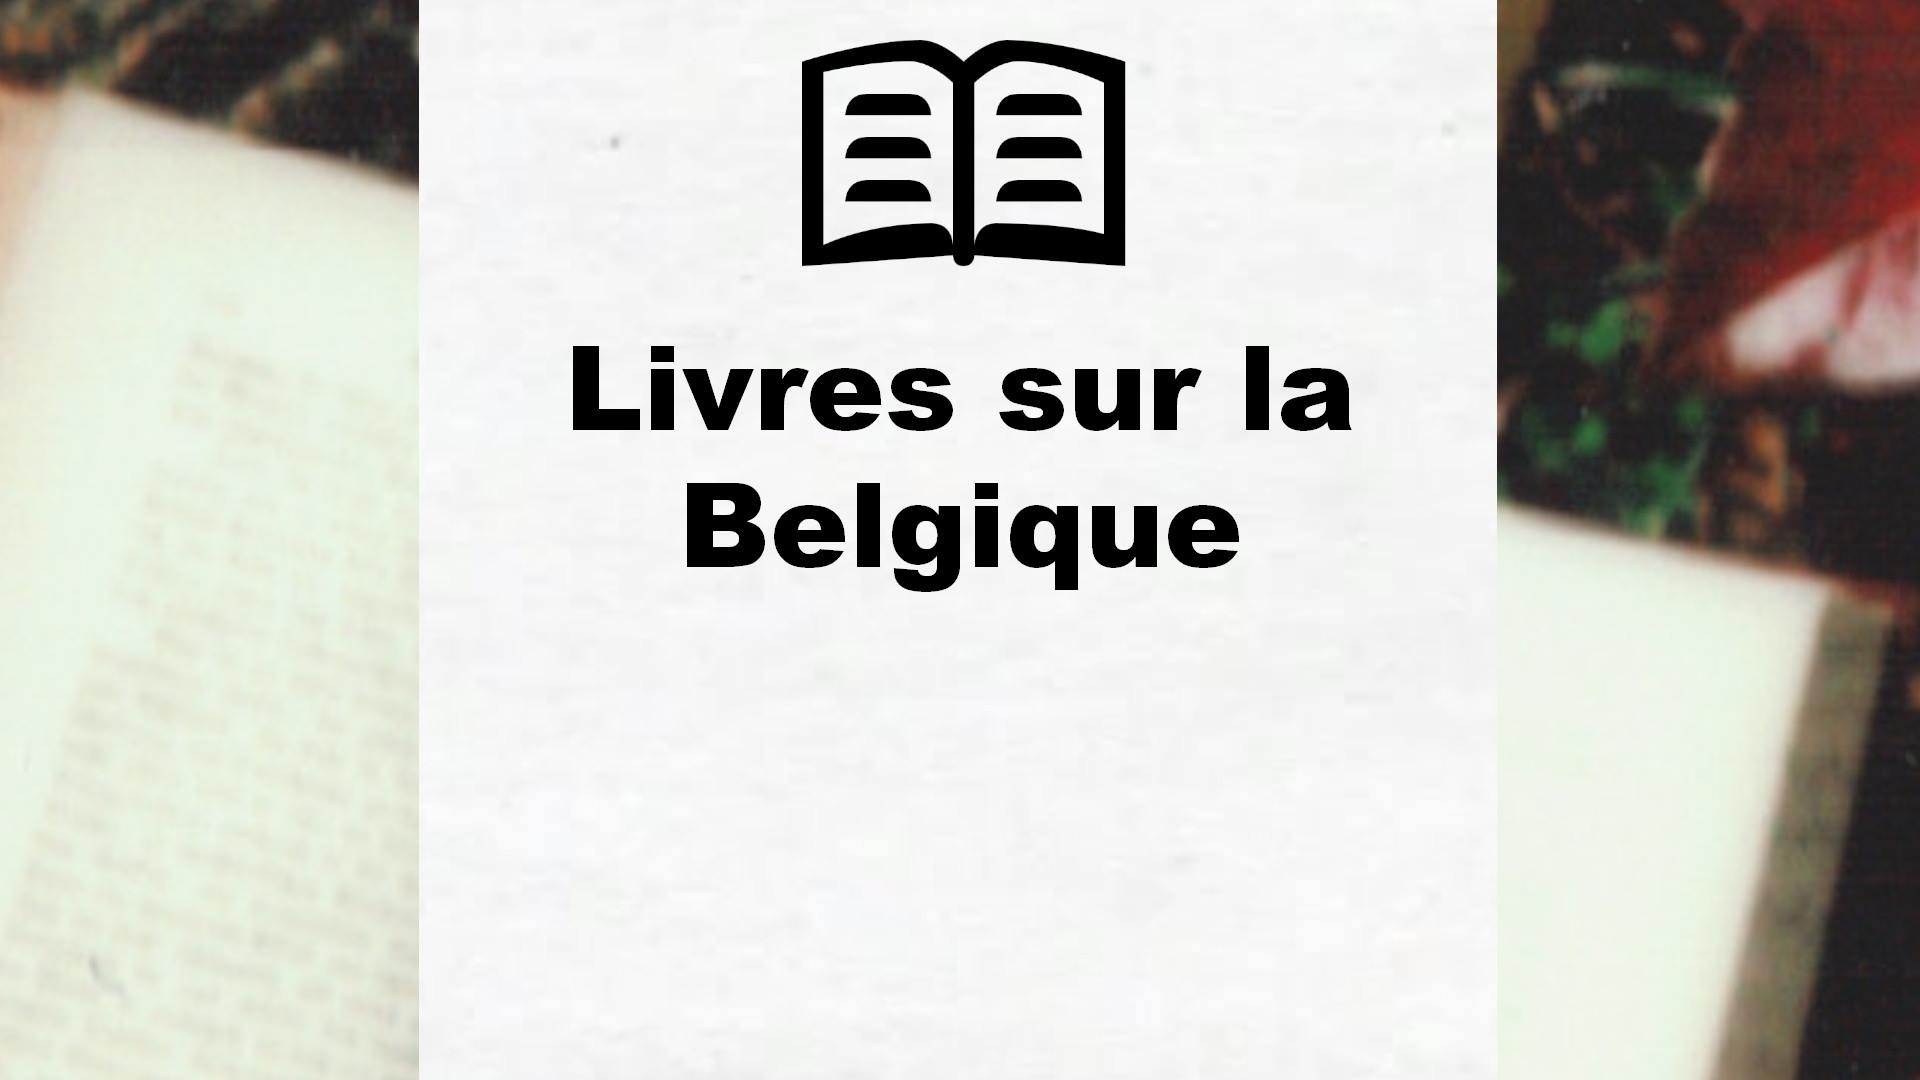 Livres sur la Belgique